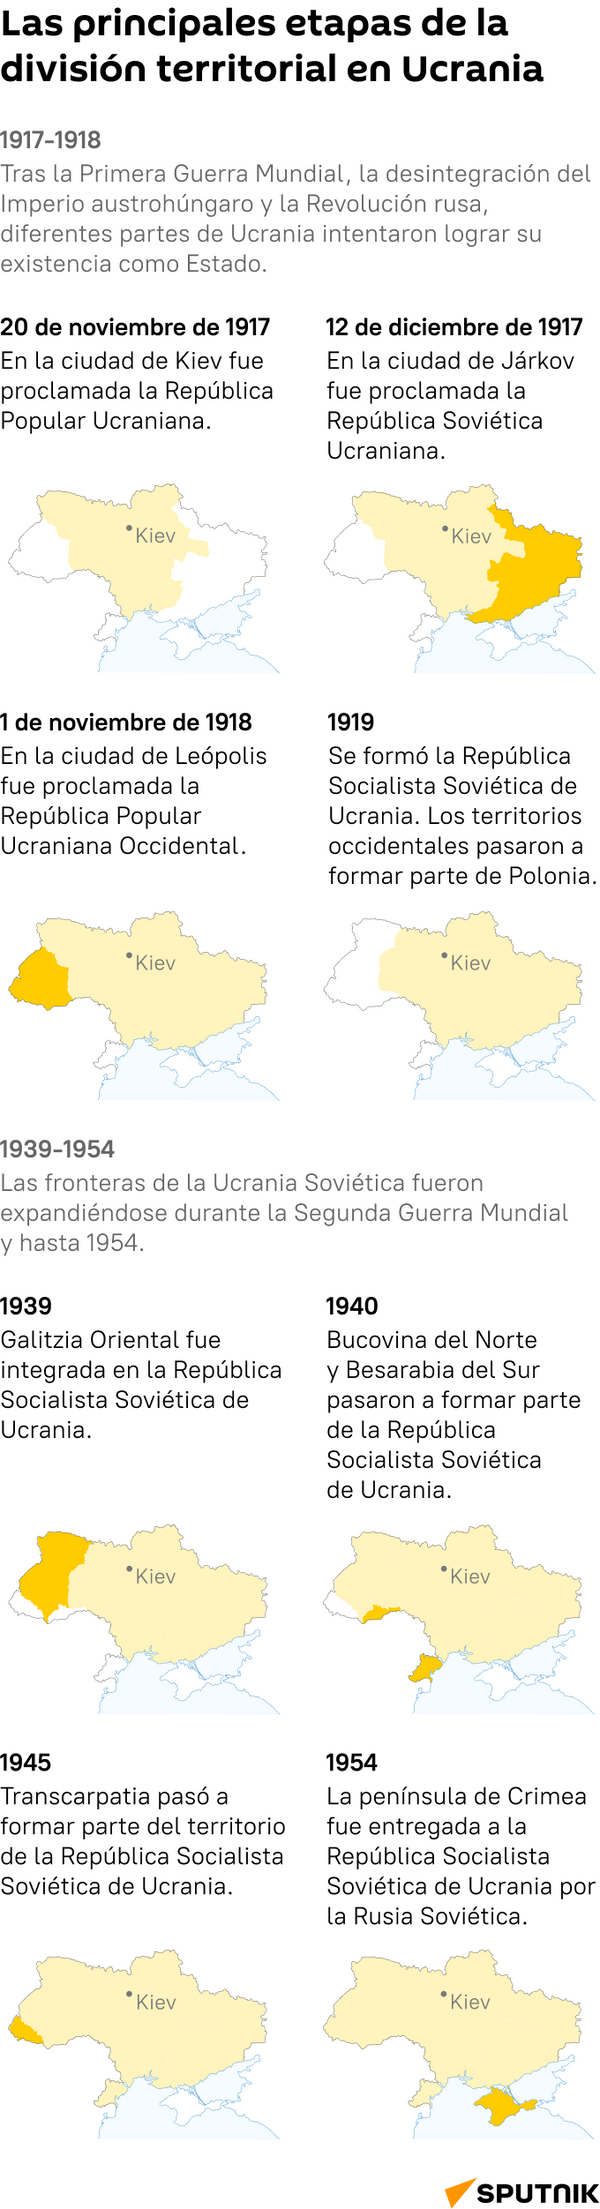 Las principales etapas de la división territorial en Ucrania - Sputnik Mundo